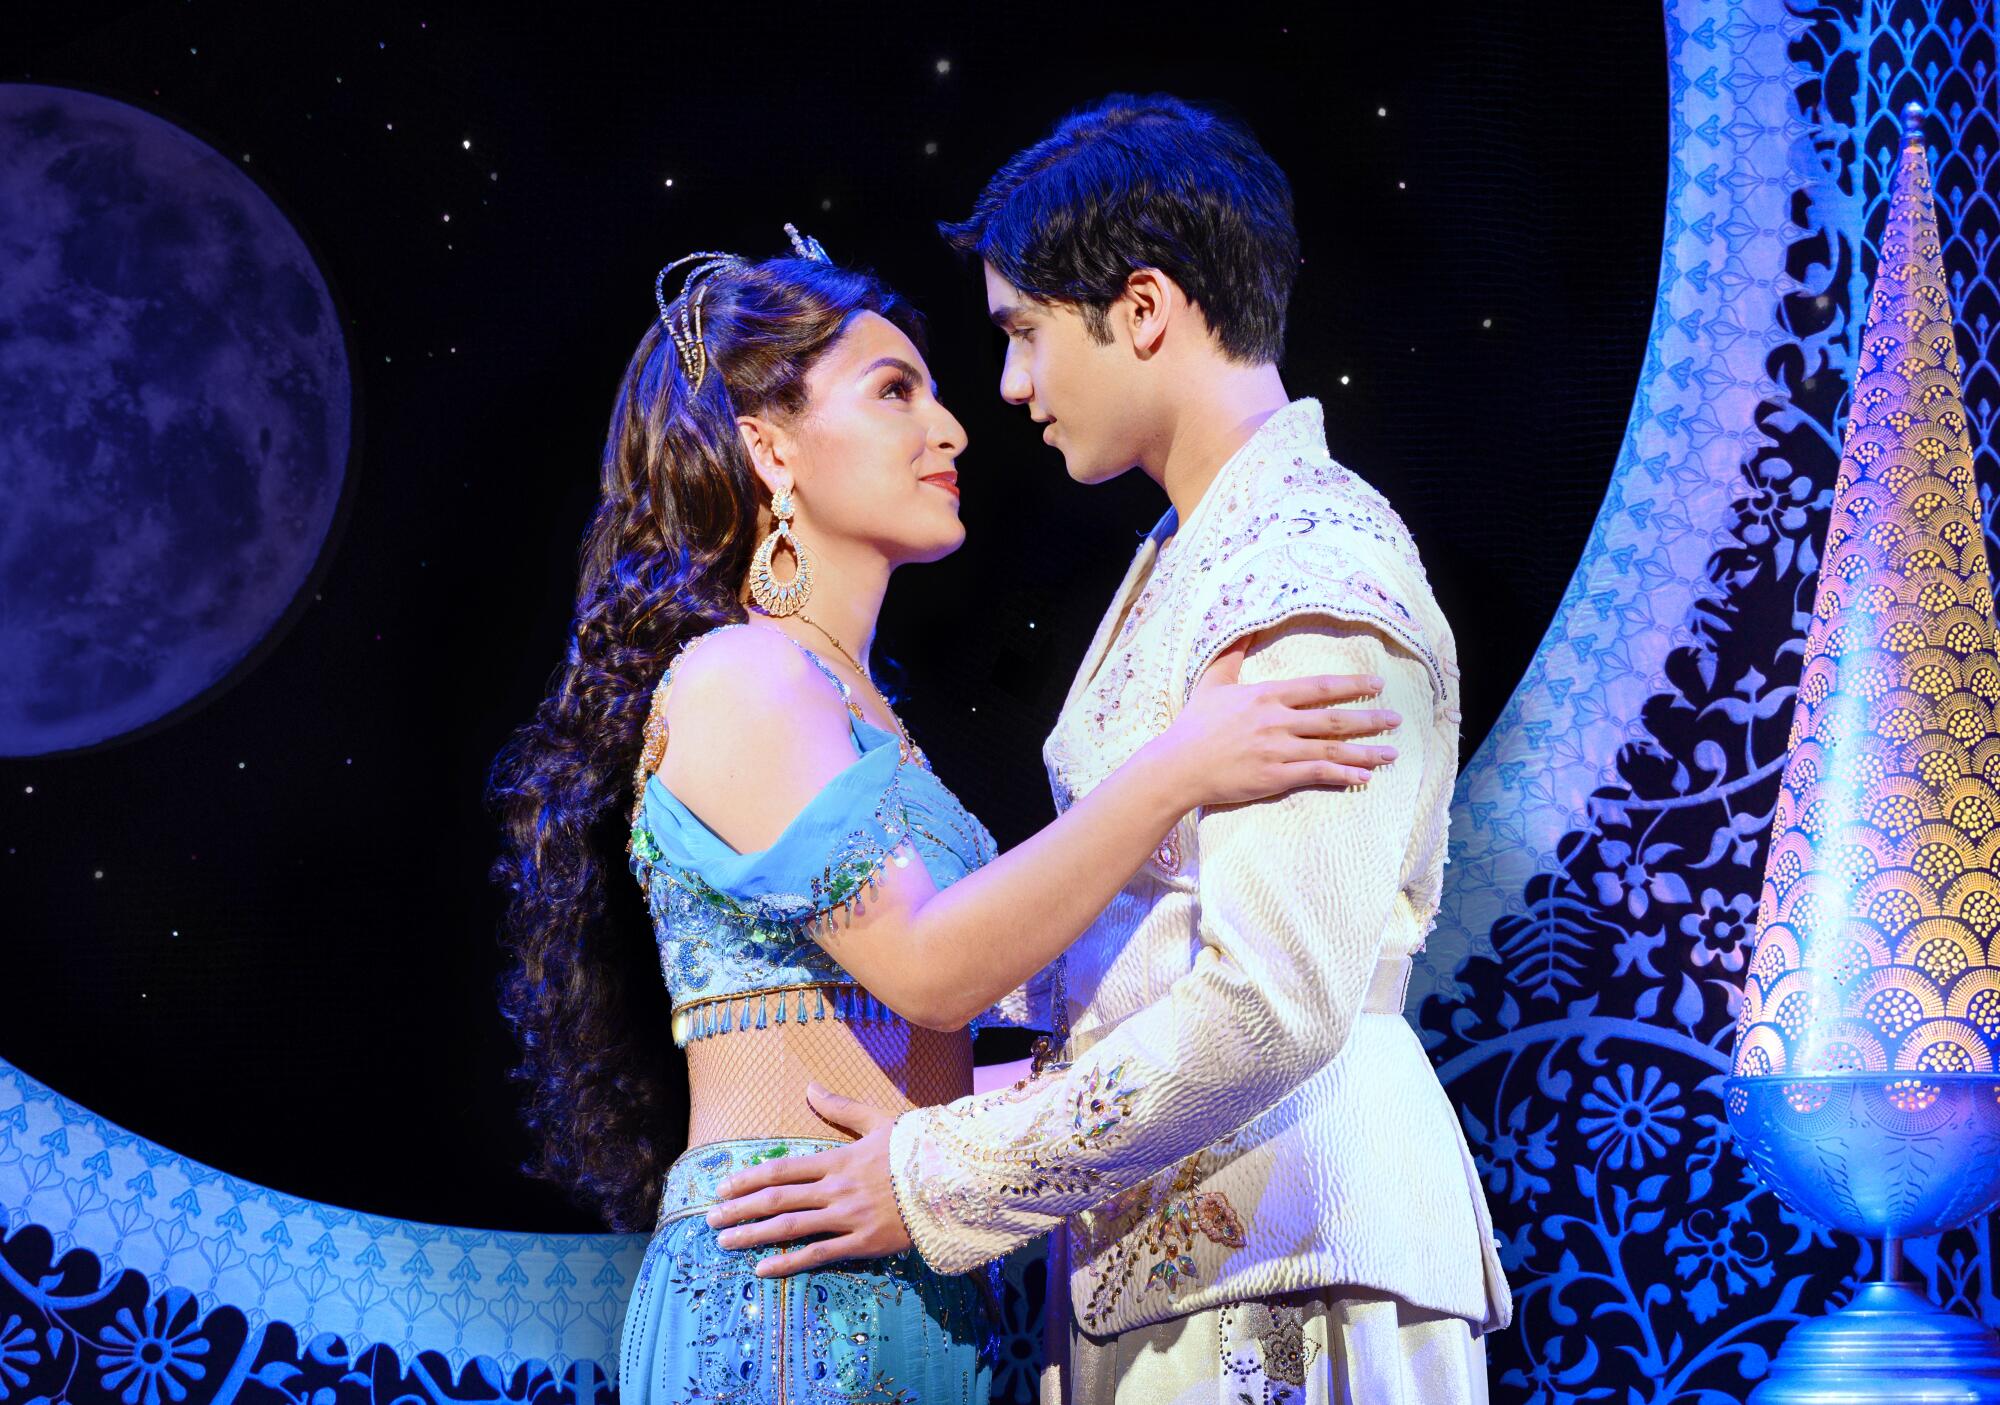 Thomas Schumacher dirige esta obra protagonizada por Adi Roy en el papel de Aladdin y Senzel Ahmady como la Princesa Jasmine.